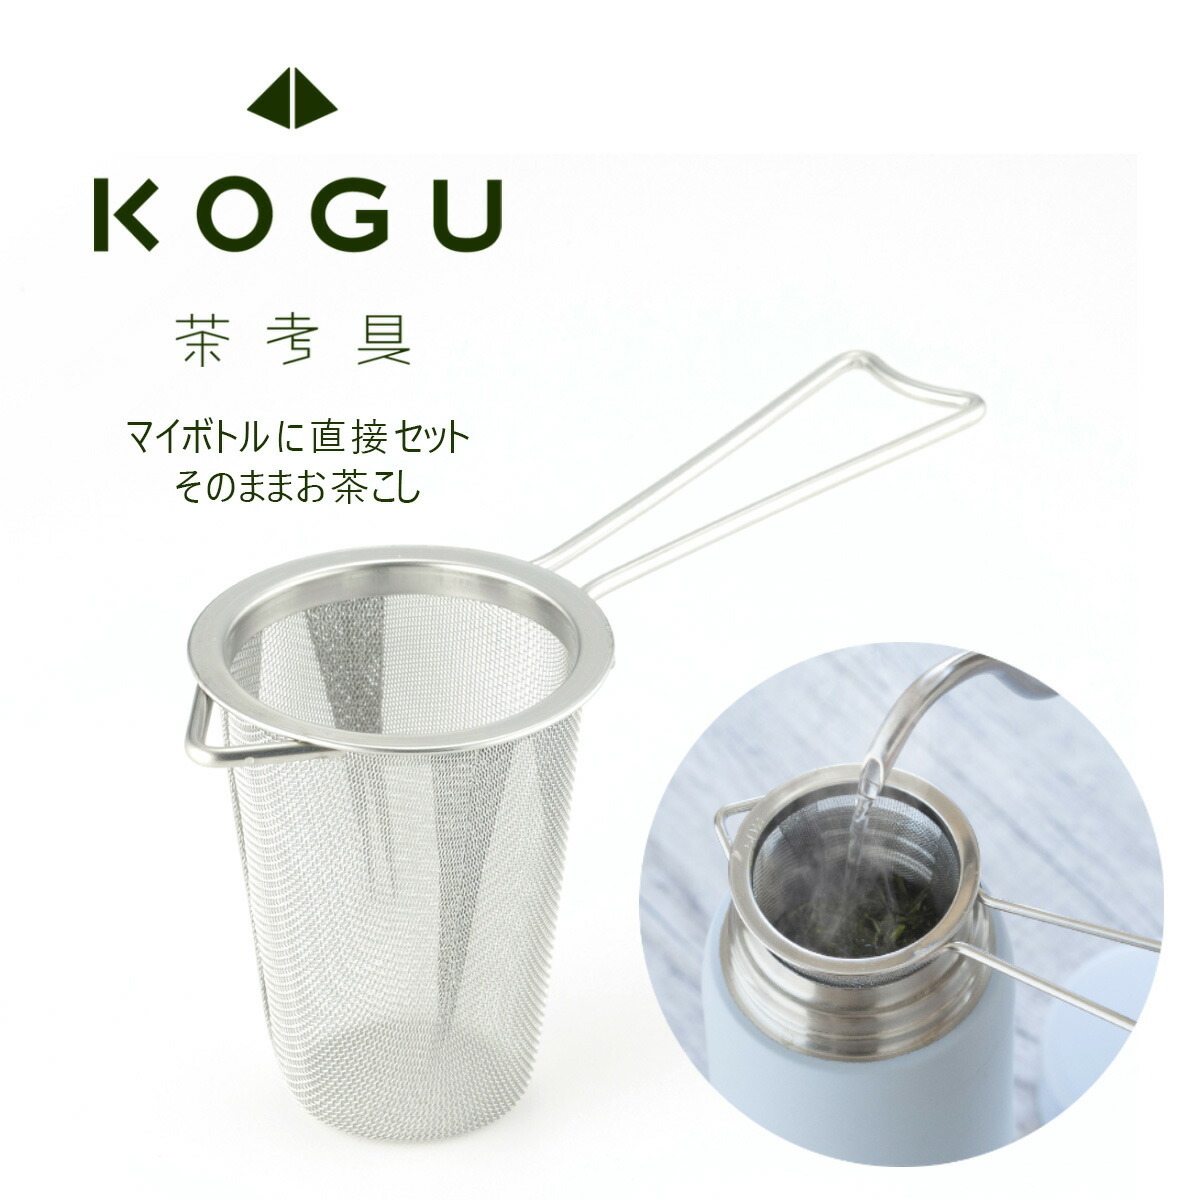  tea .. mug bottle tea .. made in Japan stainless steel tea Japanese tea black tea green tea my bottle mobile mug bottle under ...KOGU Tea tea strainer .. present 